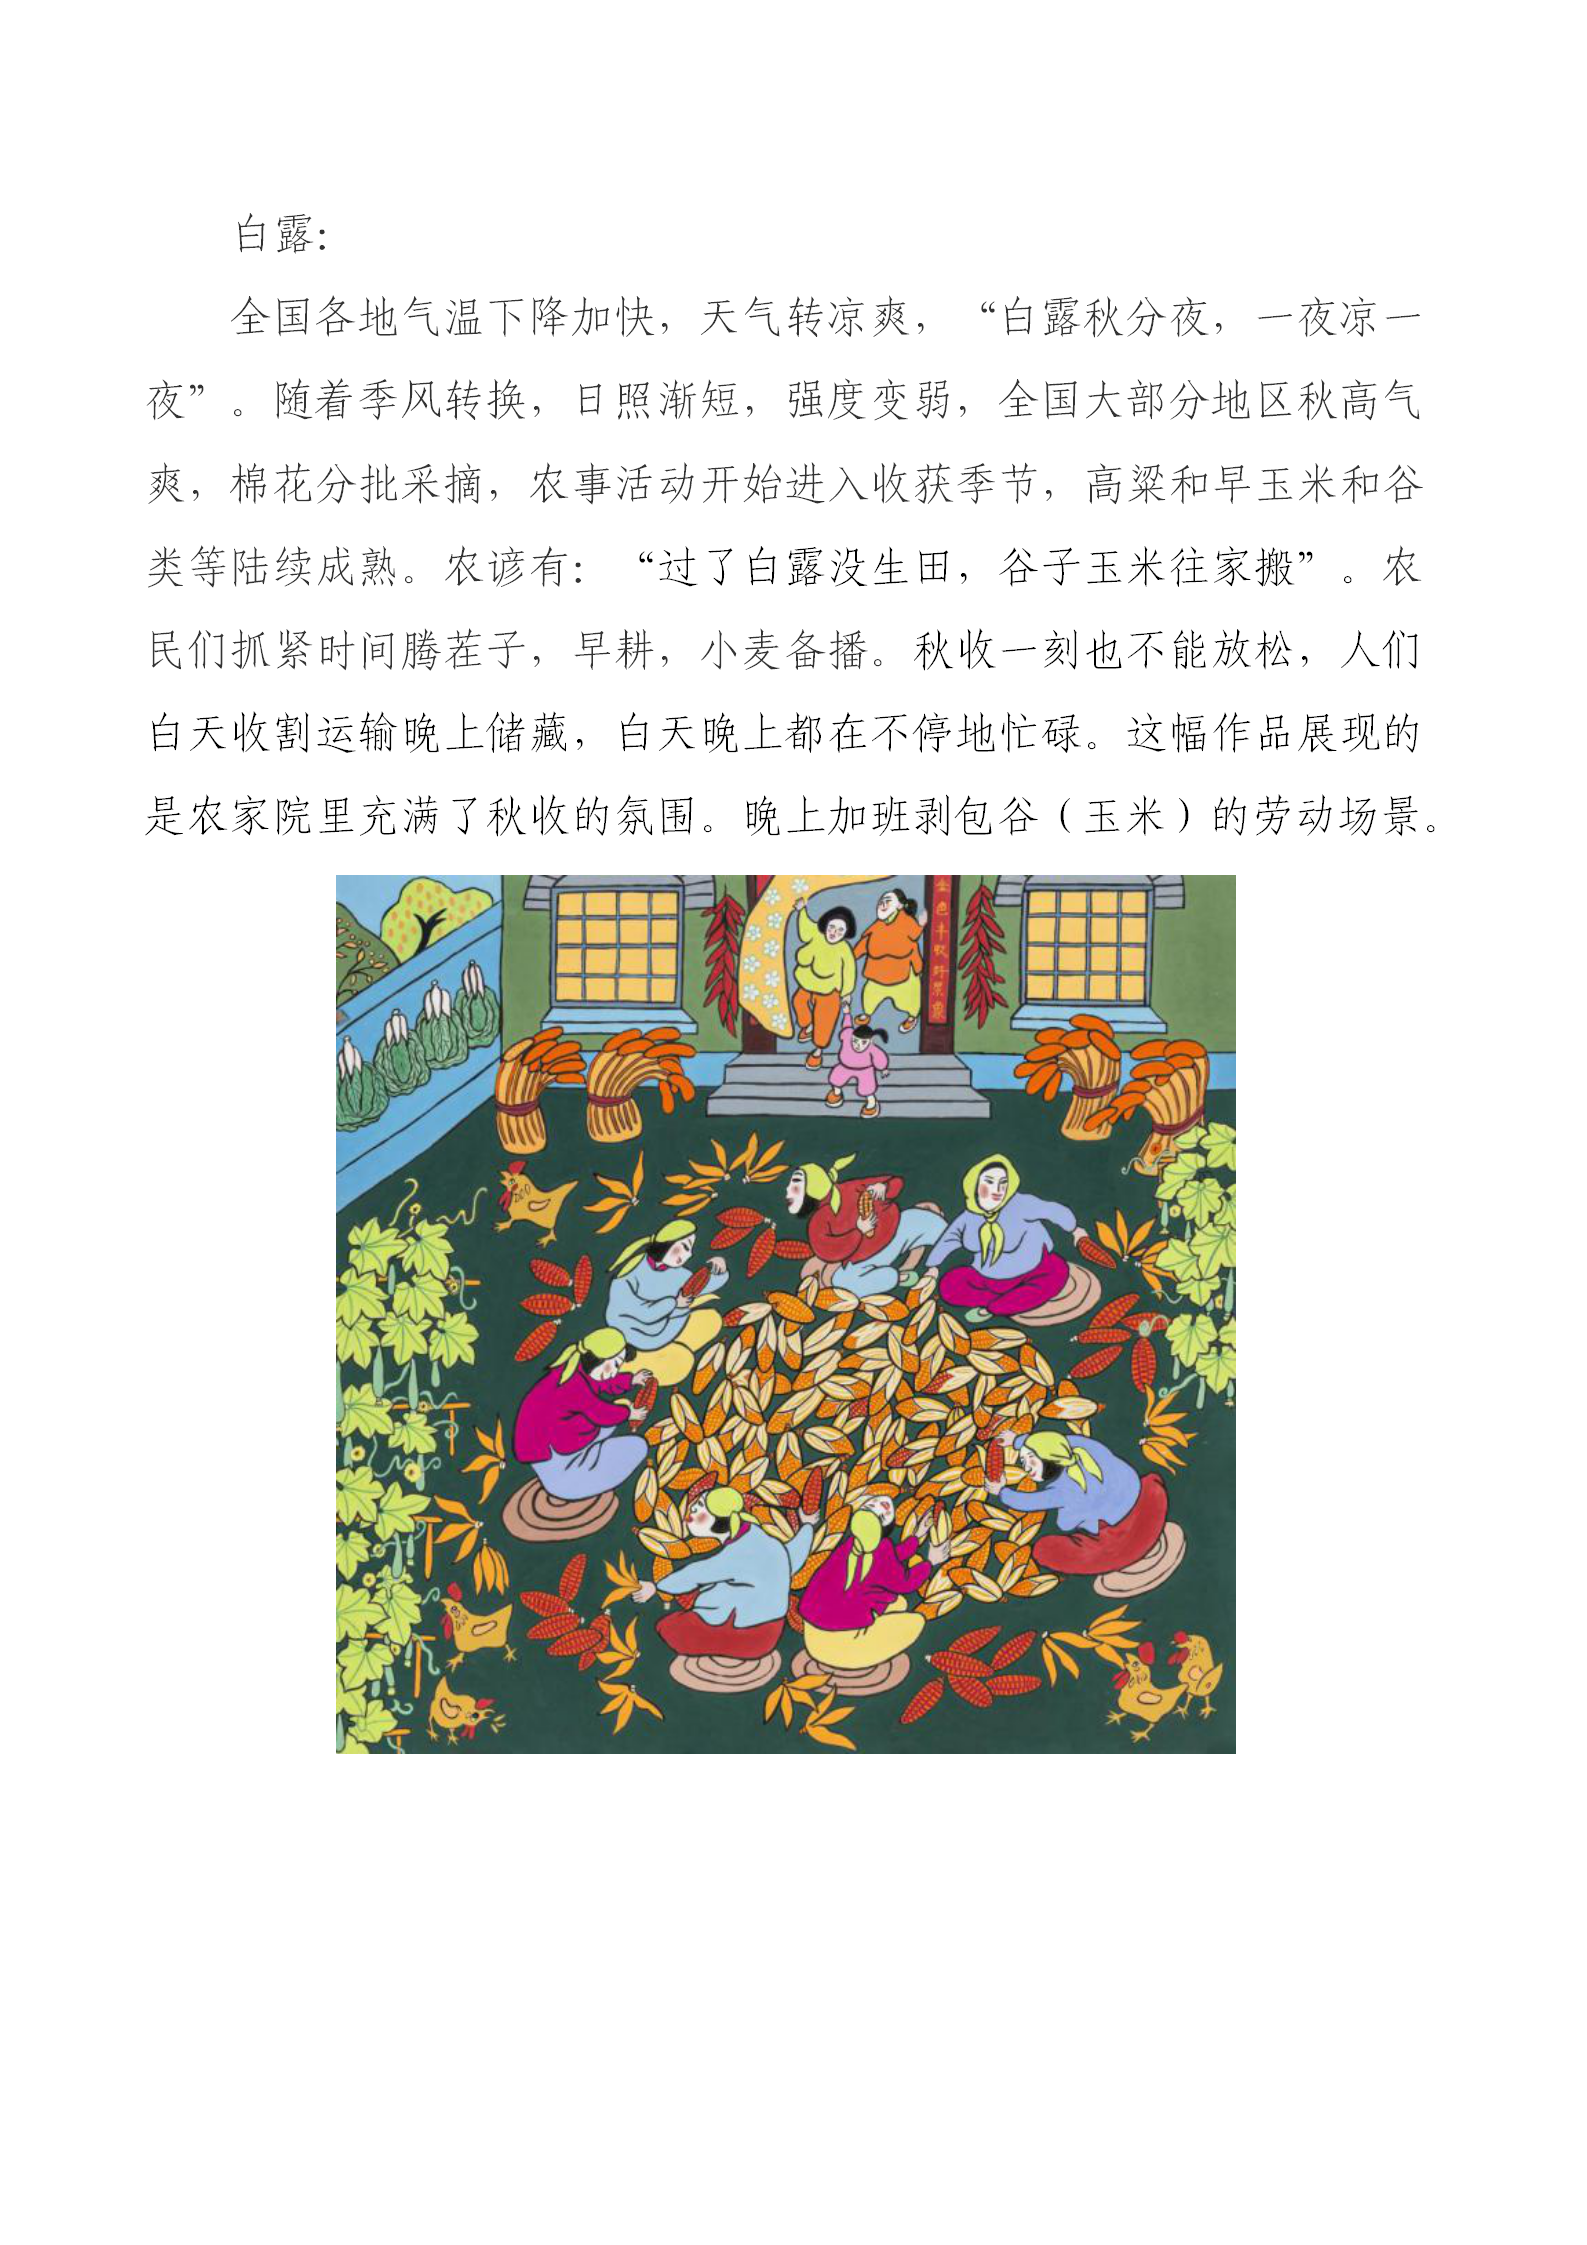 辛集农民画精品展示——中国“年”的传统习俗